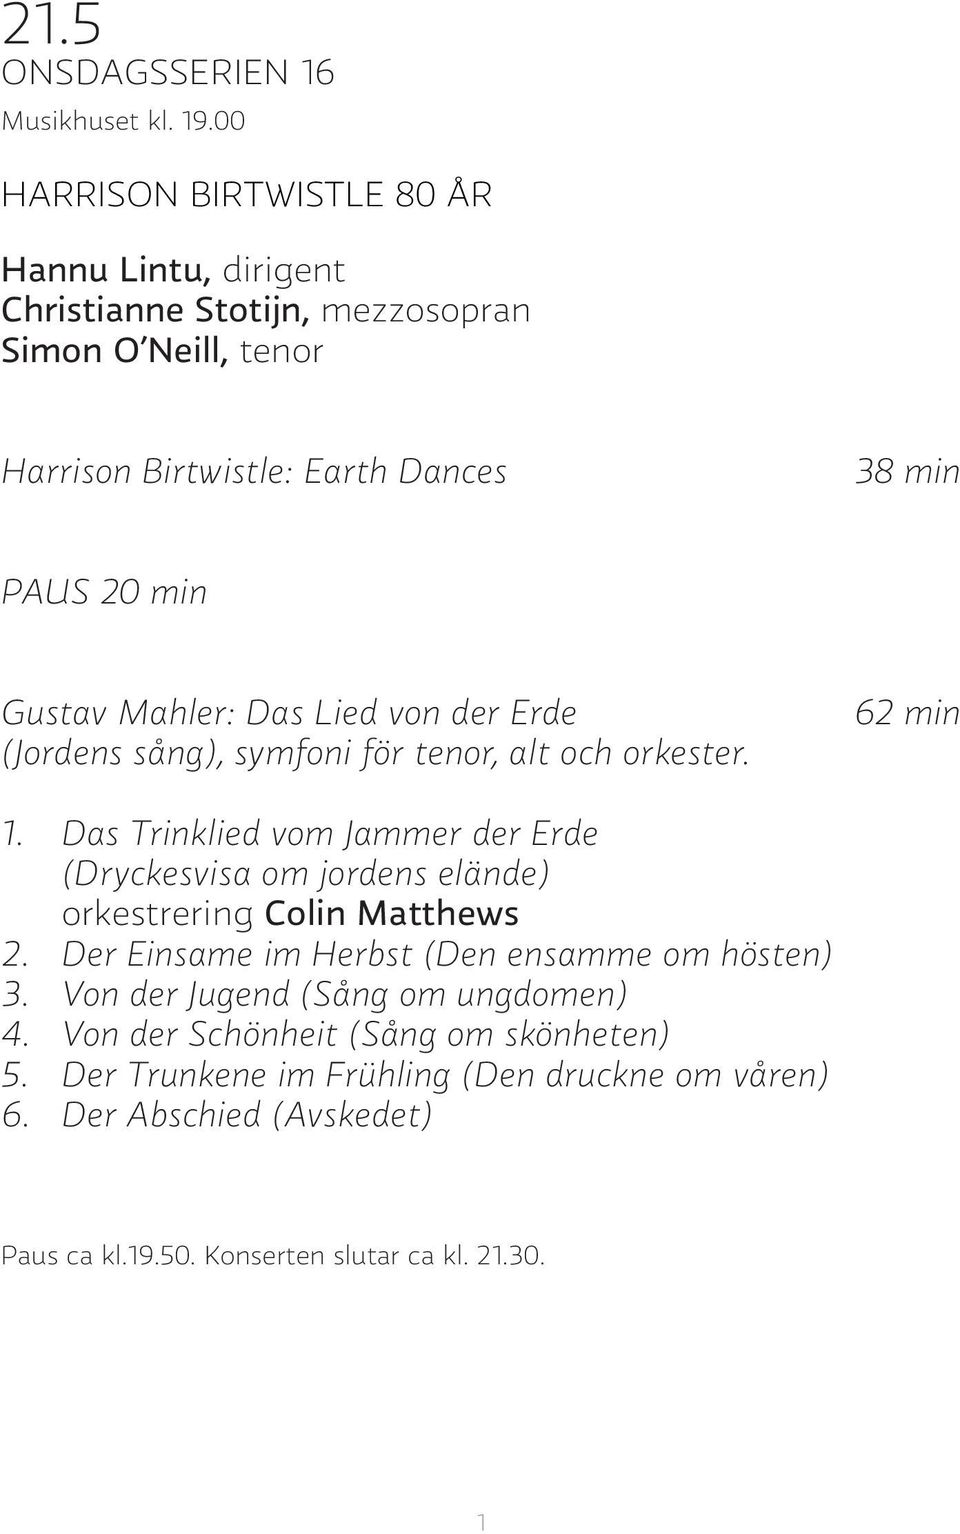 Gustav Mahler: Das Lied von der Erde (Jordens sång), symfoni för tenor, alt och orkester. 62 min 1.